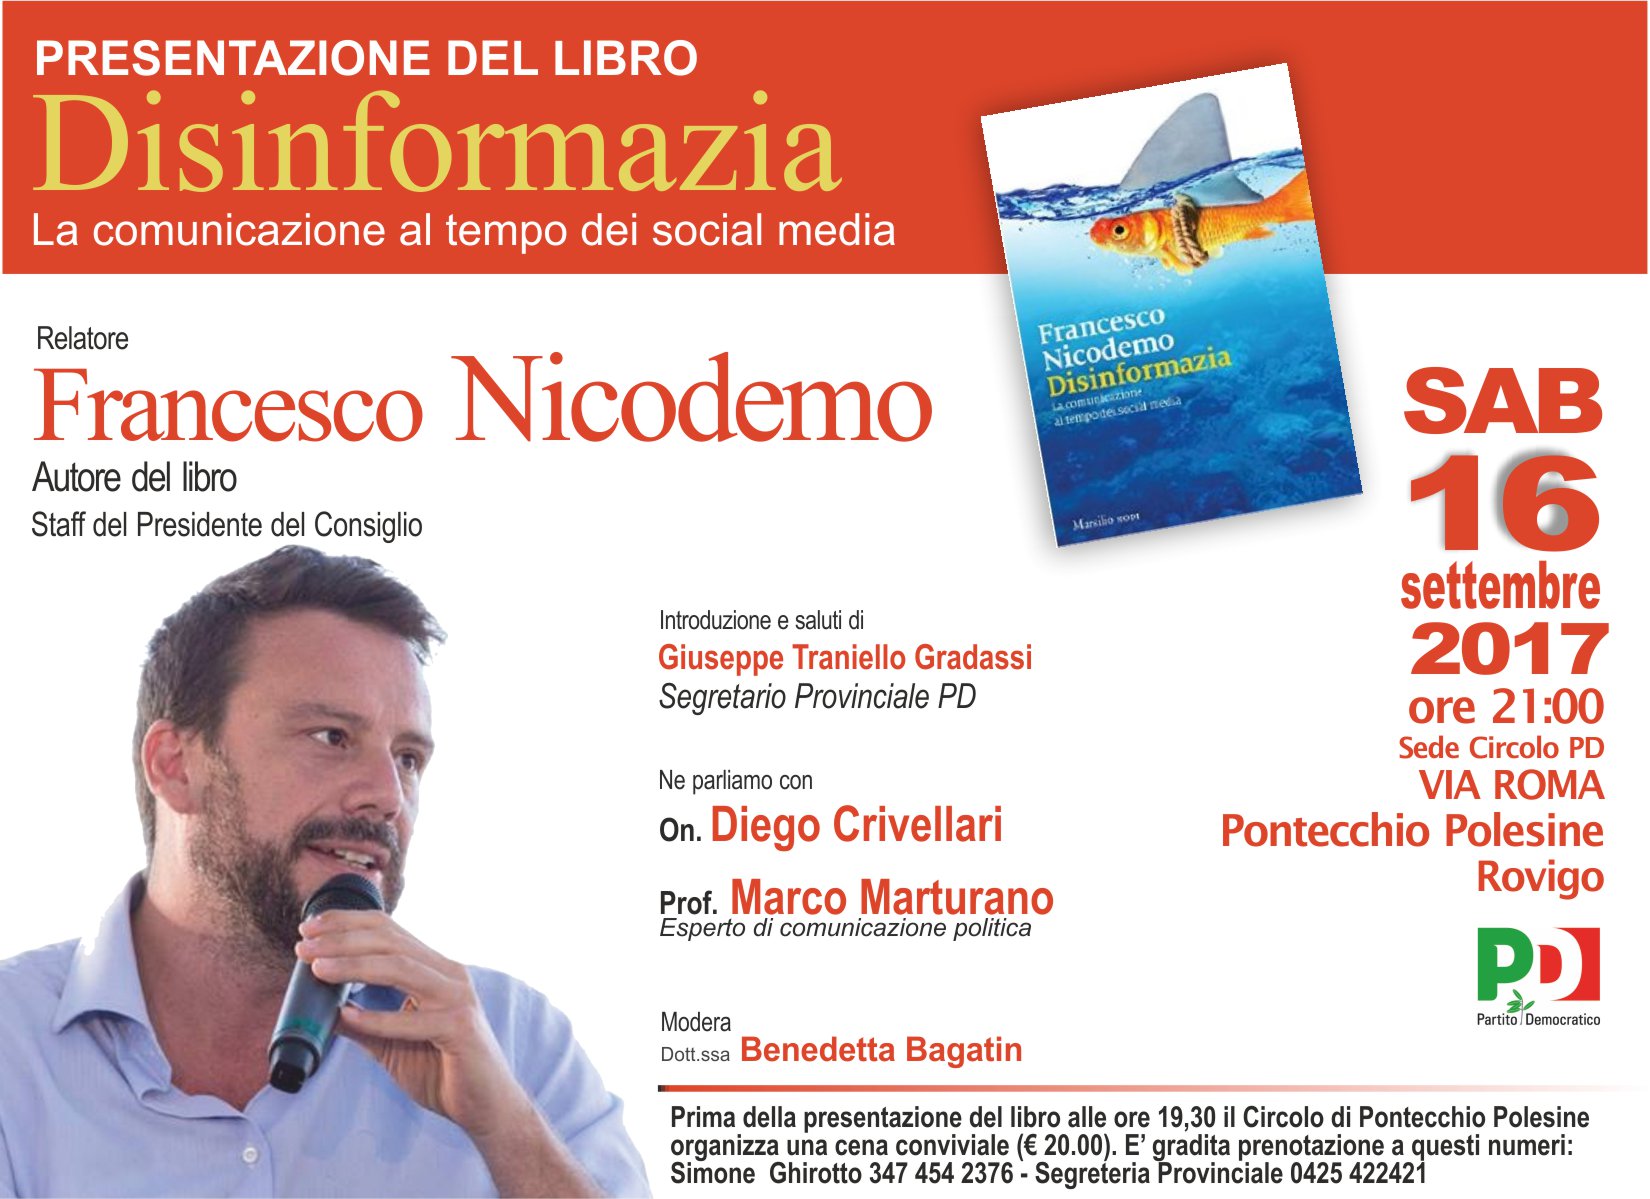 Al momento stai visualizzando Pontecchio Polesine – Sabato 16 settembre Francesco Nicodemo presenta il libro “Disinformazia. La comunicazione al tempo dei social media.”